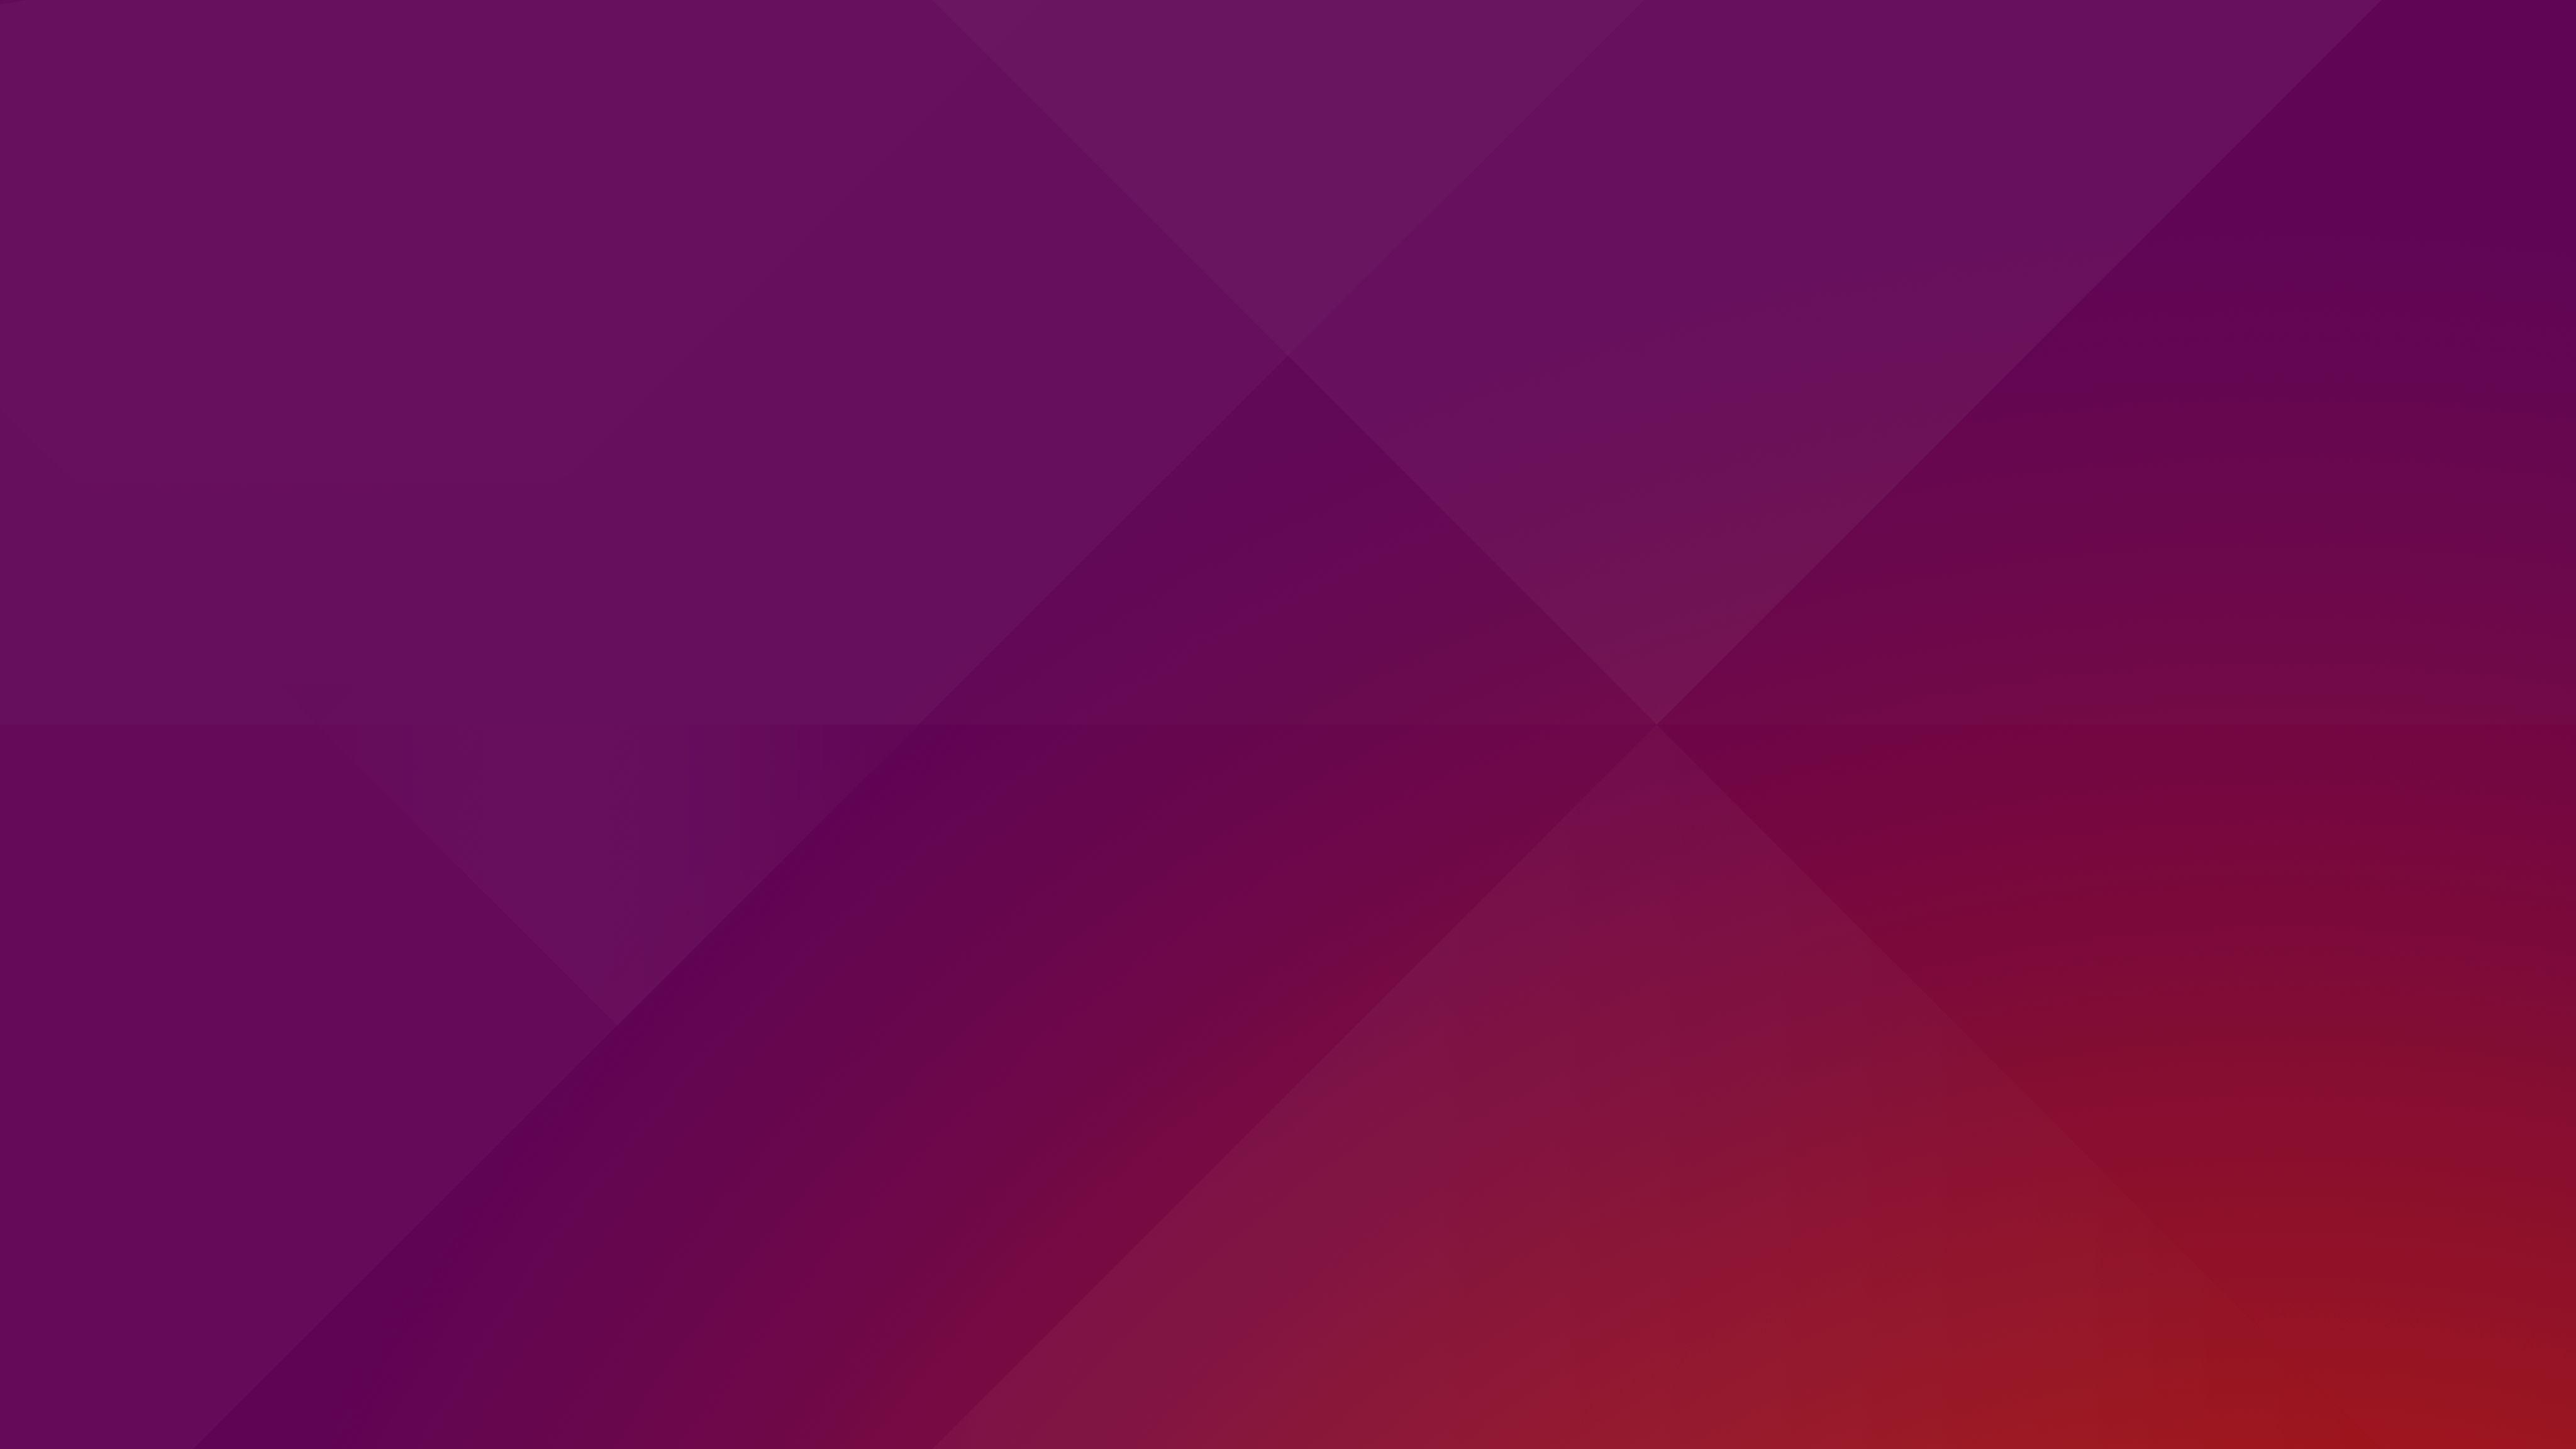 This is the Default Desktop Wallpaper for Ubuntu 16.10